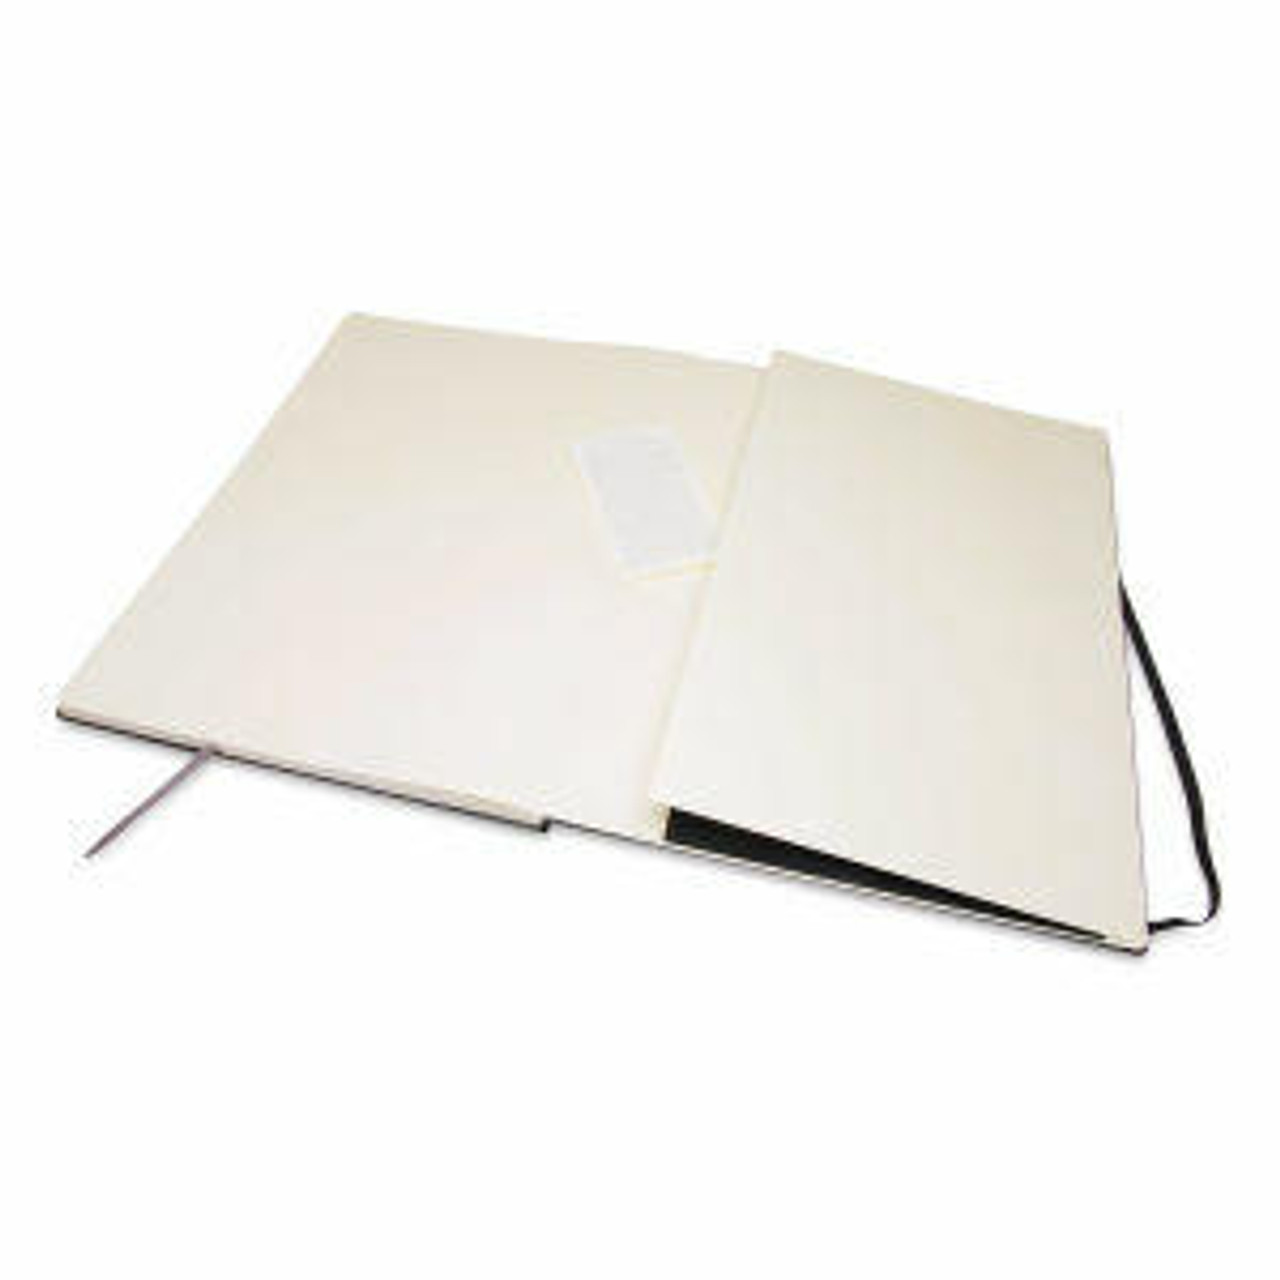 Moleskine New classic horizontal large hard surface notebook